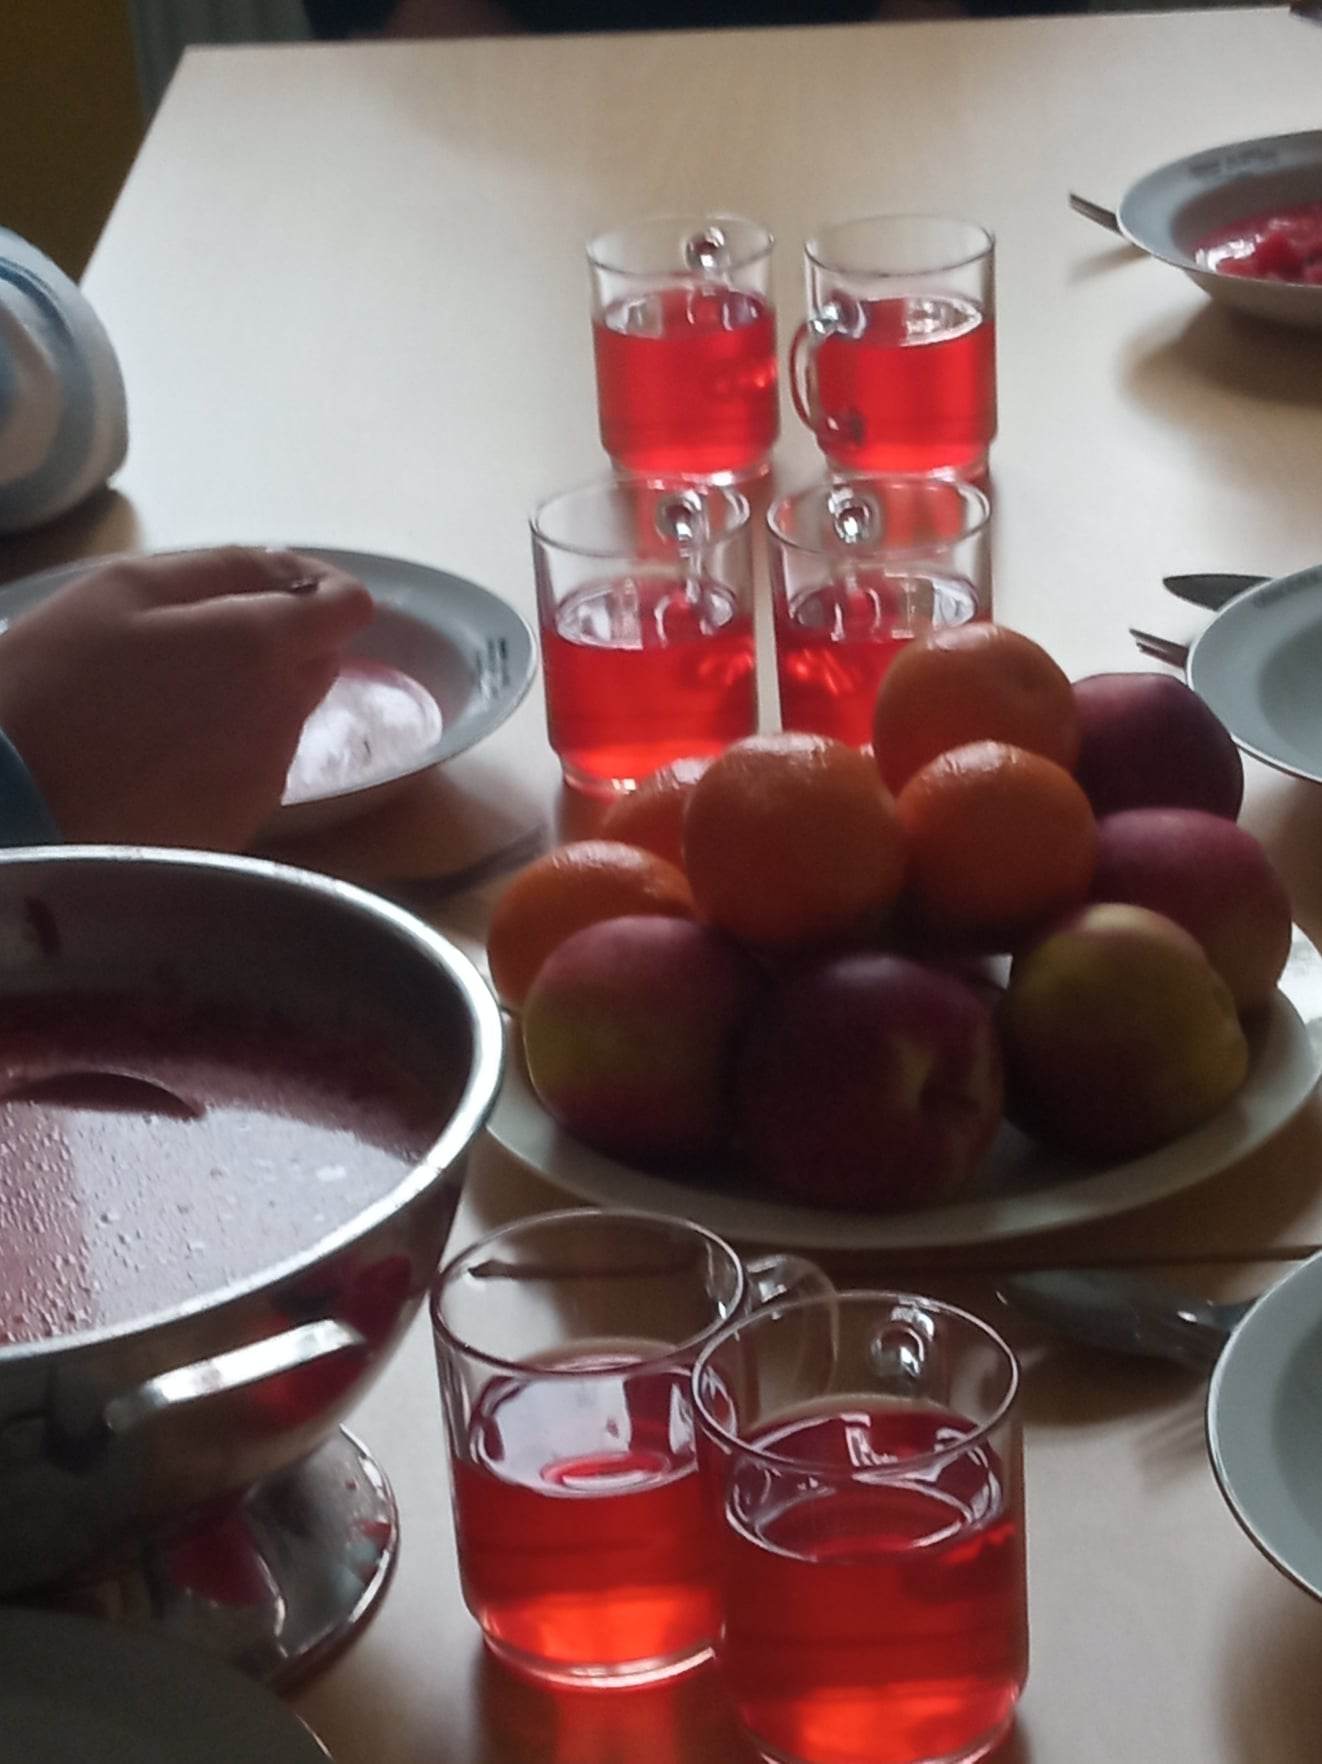 Na stole stoją talerze i szklanki  z potrawami i napojami